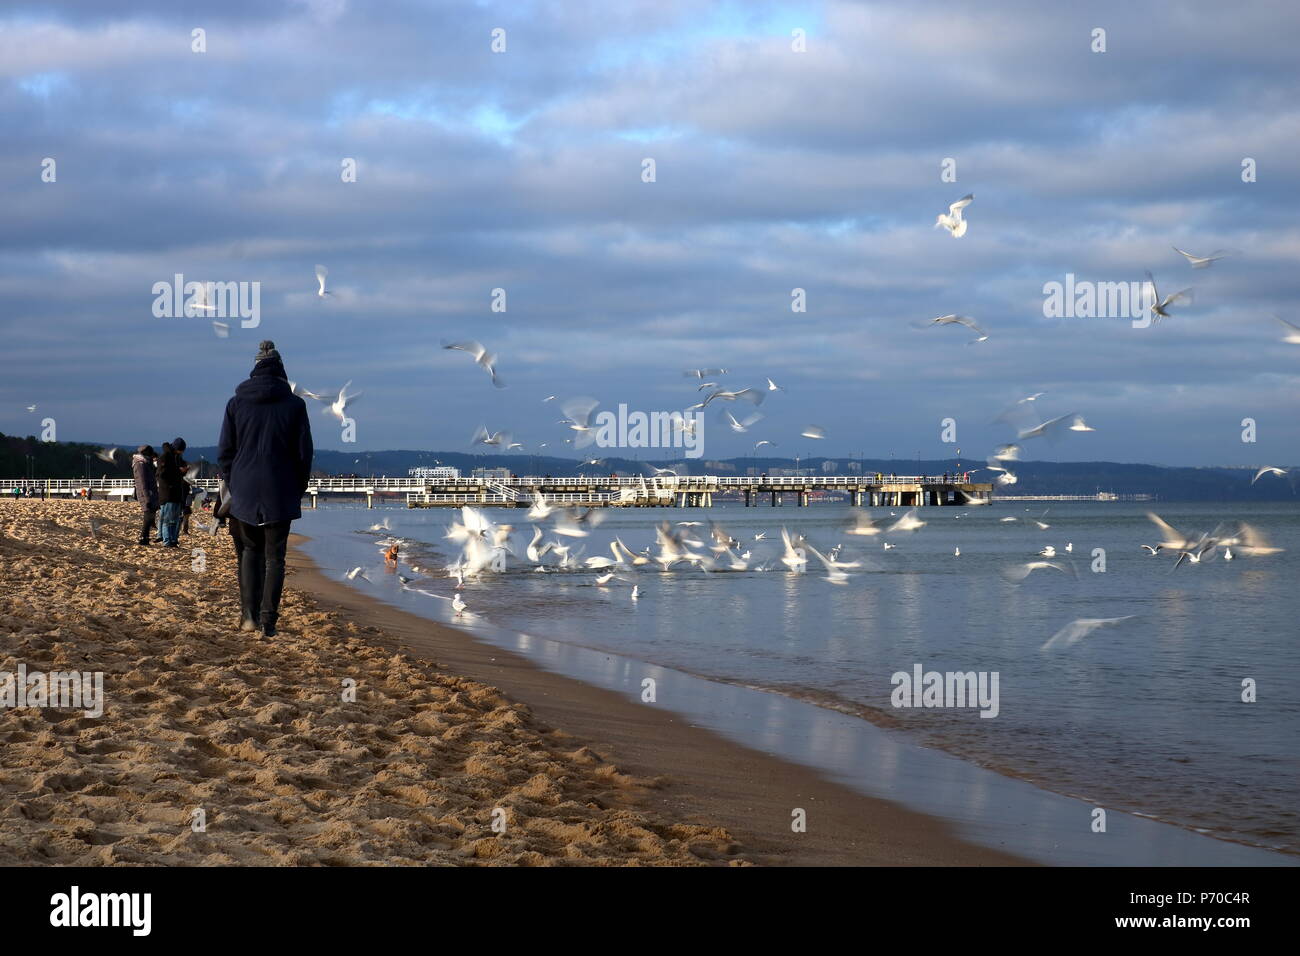 Mer, mer des oiseaux volent, les gens à pied sur une plage de sable, le temps froid, ciel nuageux, les gens vêtus de manteaux et chapeaux Banque D'Images